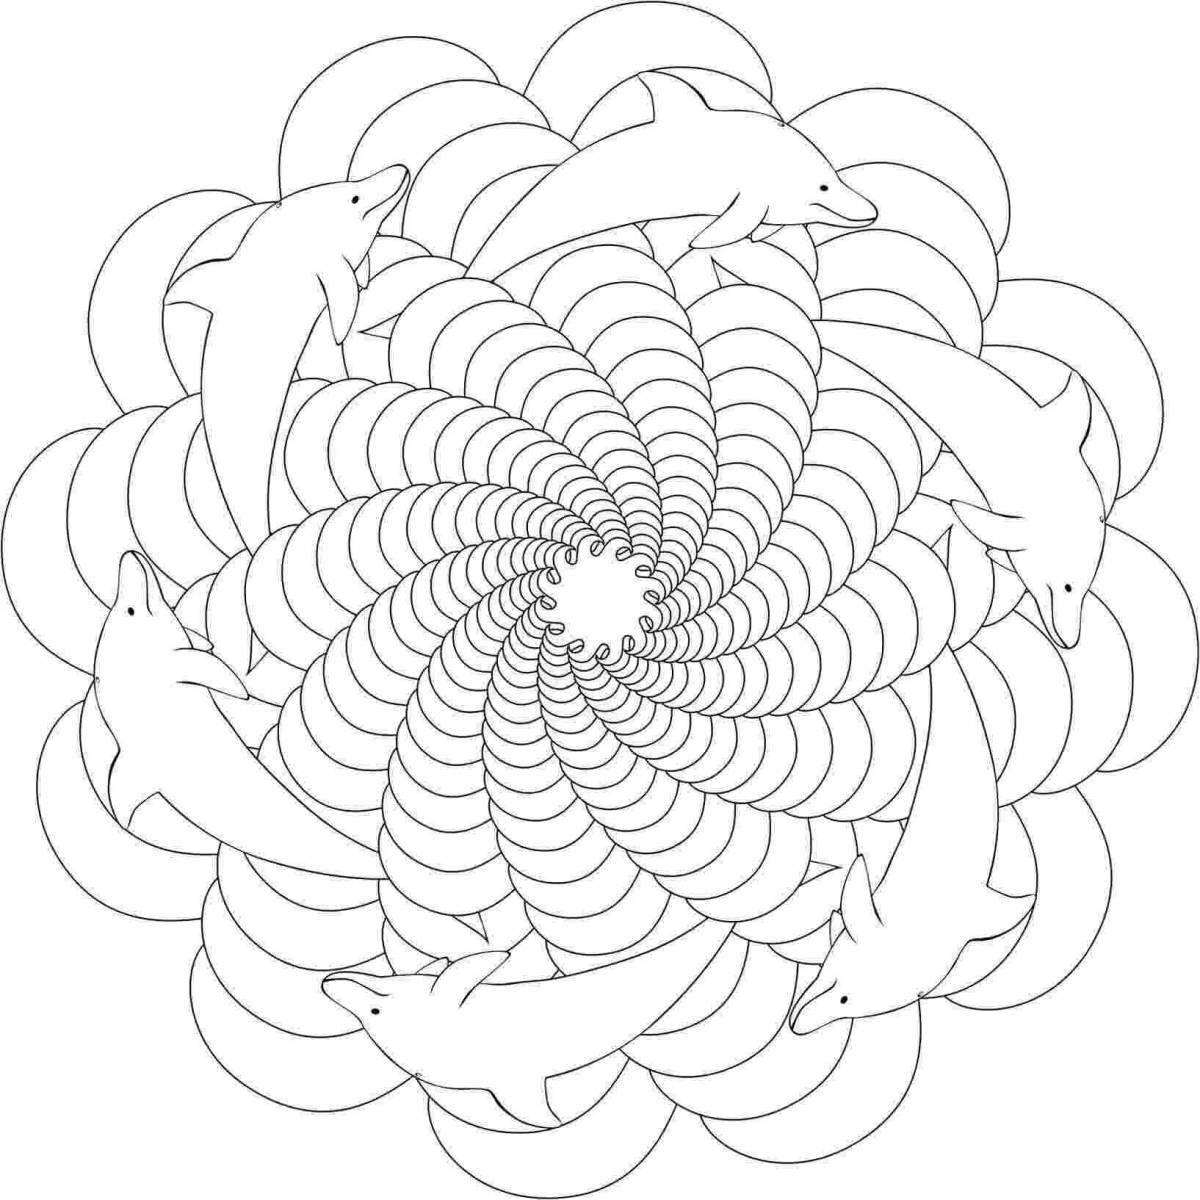 Joyful coloring spiral pattern